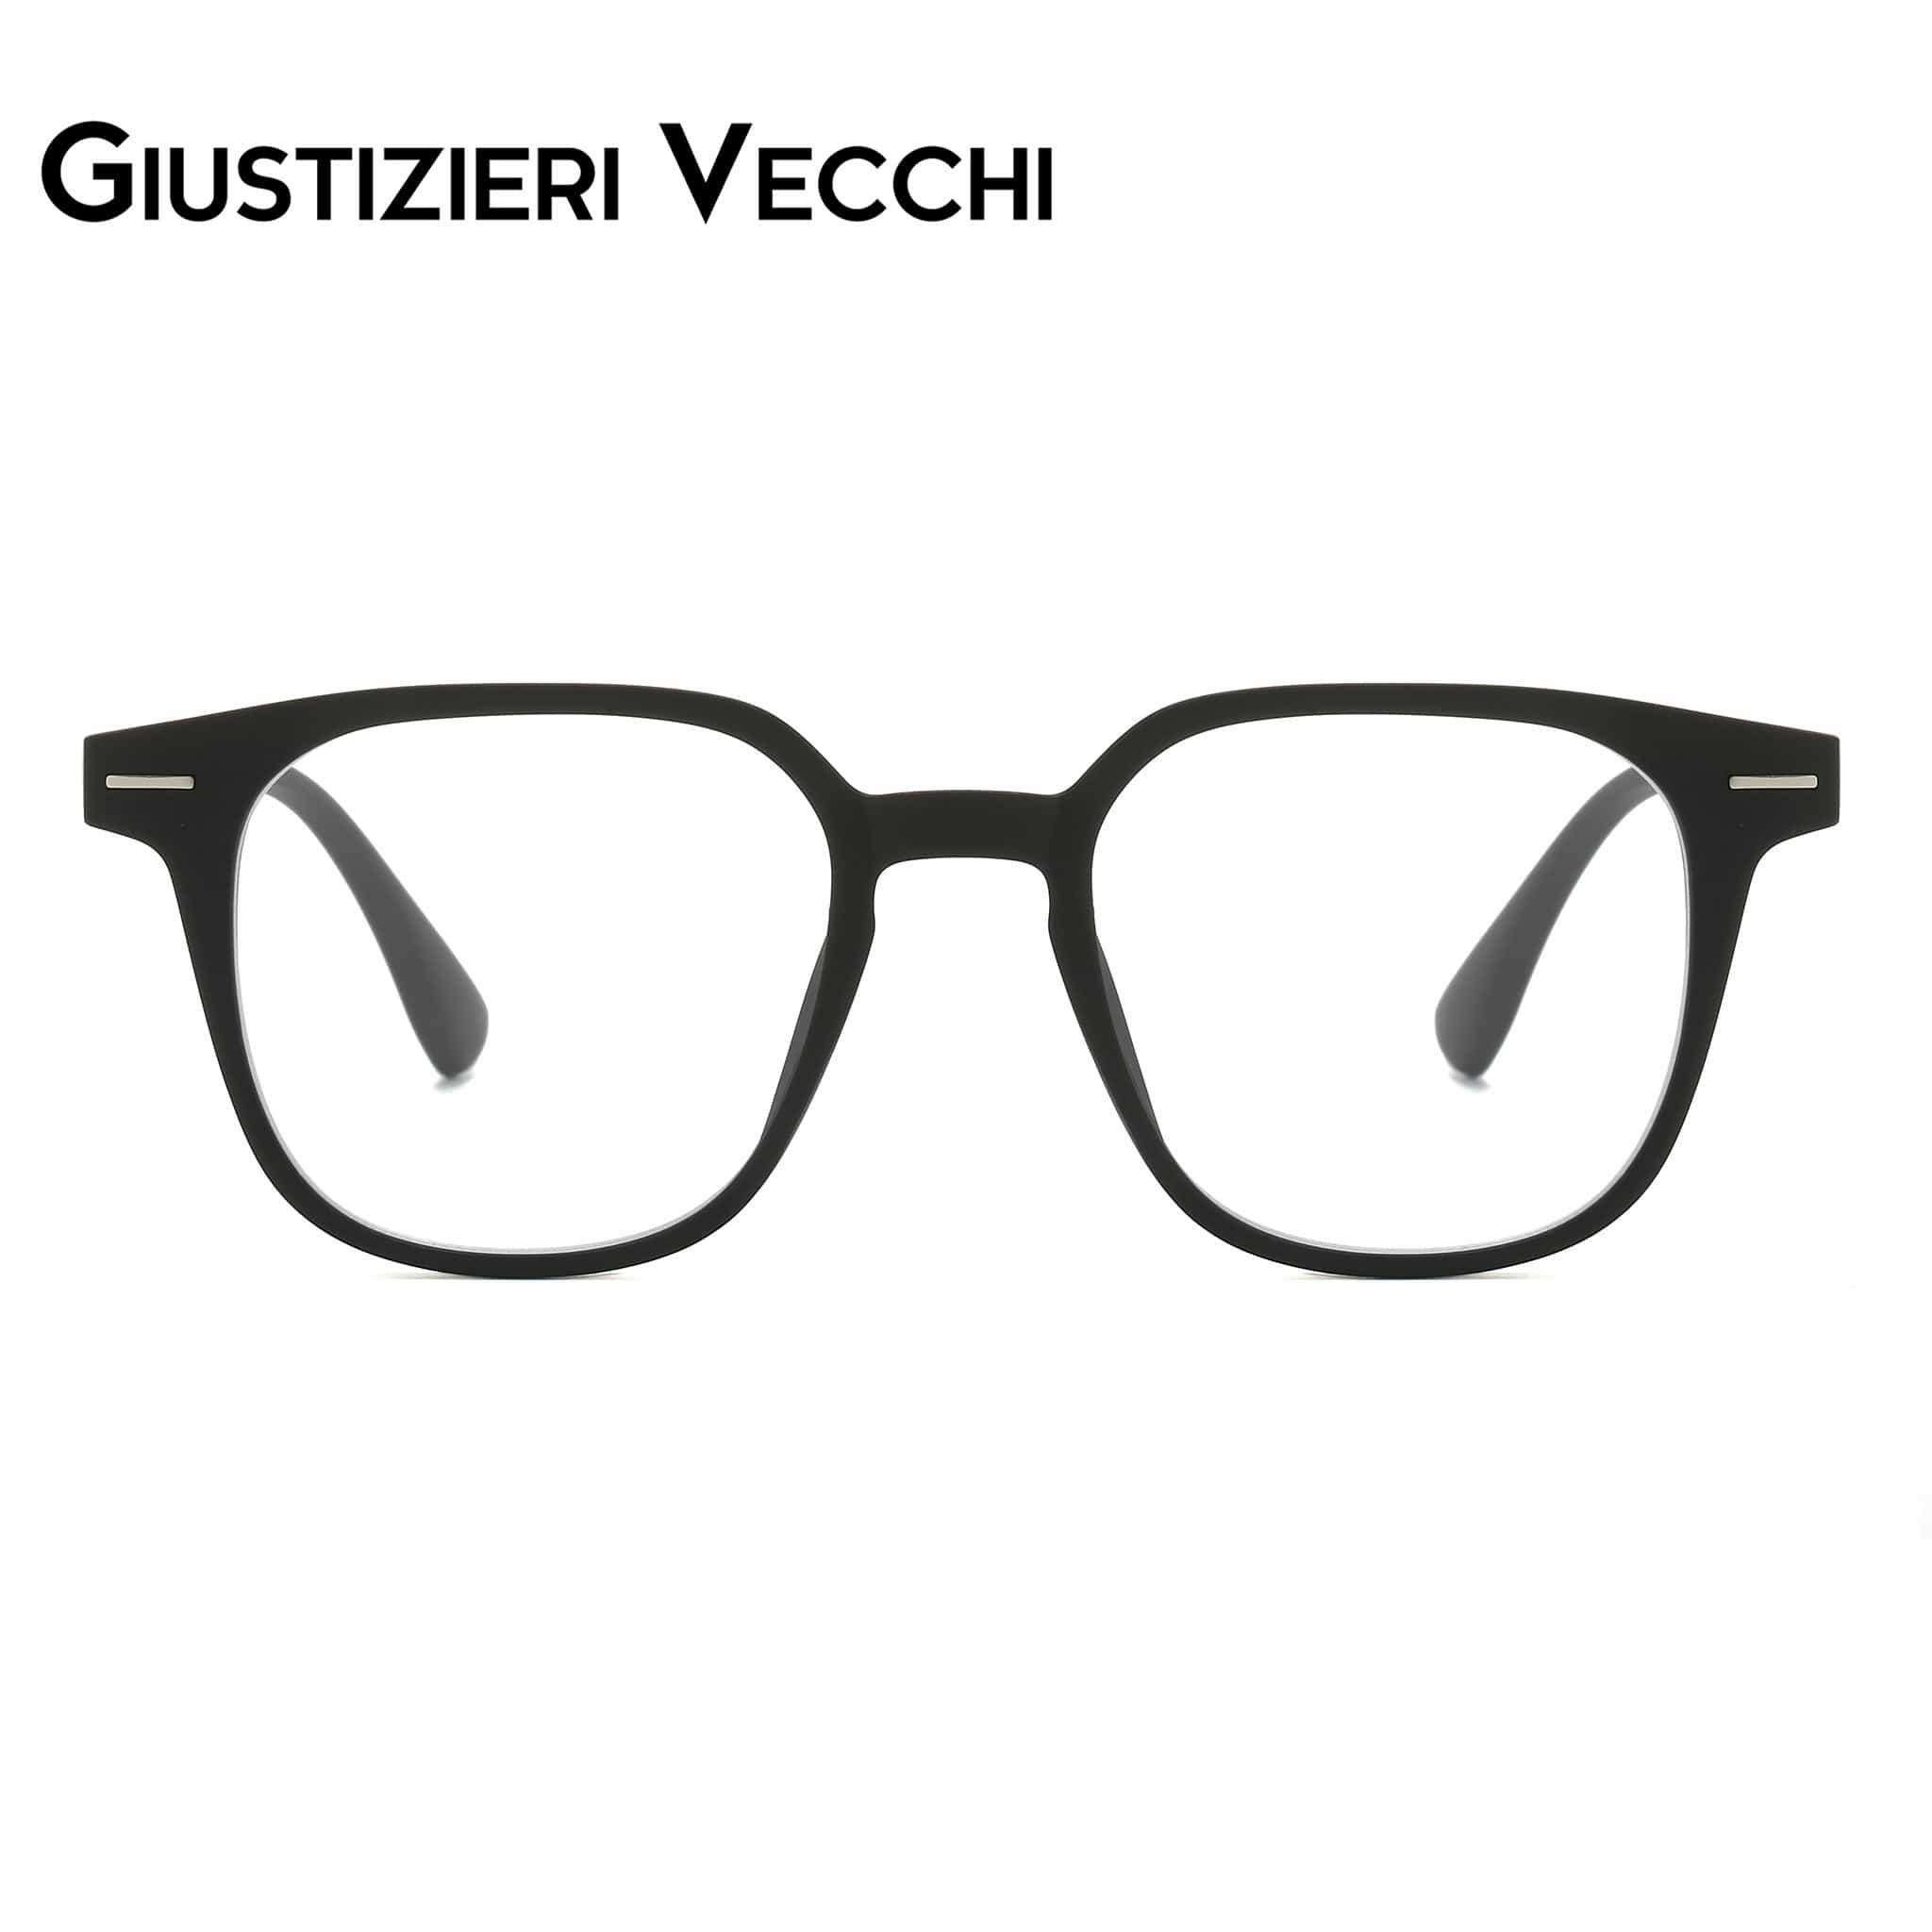 GIUSTIZIERI VECCHI Eyeglasses Small / Matte Black IceWave Tre